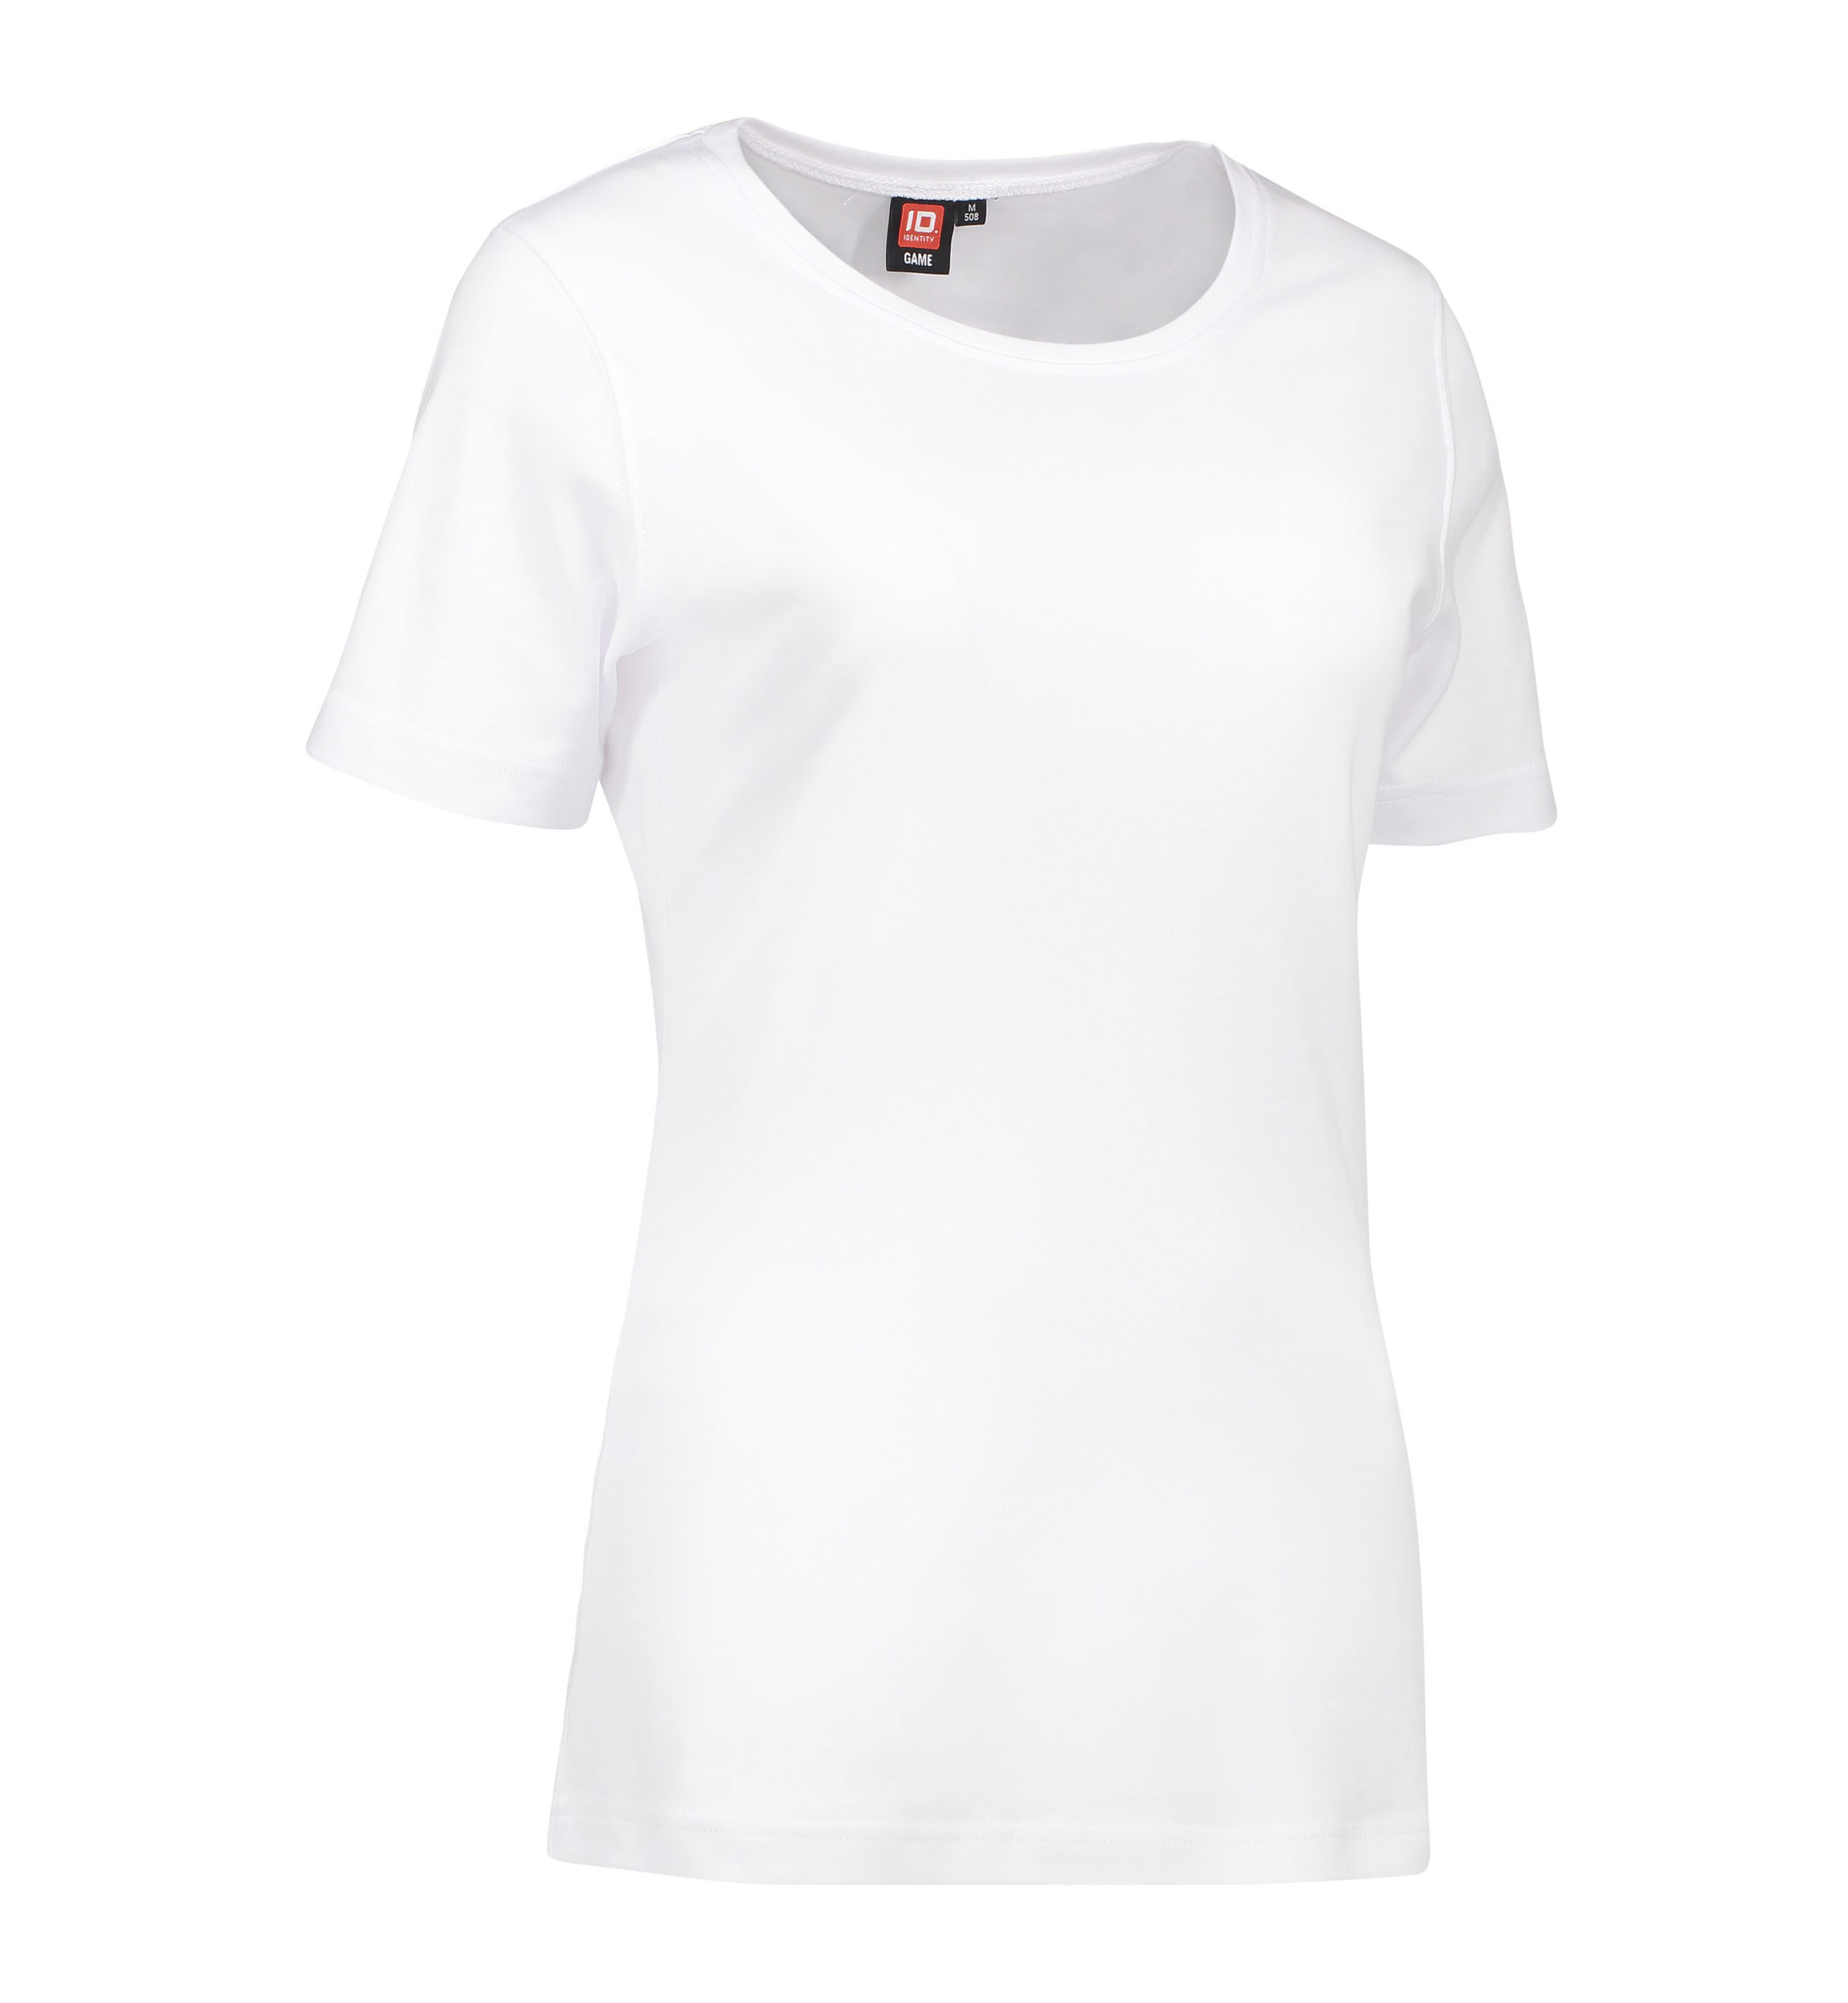 Billede af Dame t-shirt med rund hals i hvid - S hos Sygeplejebutikken.dk